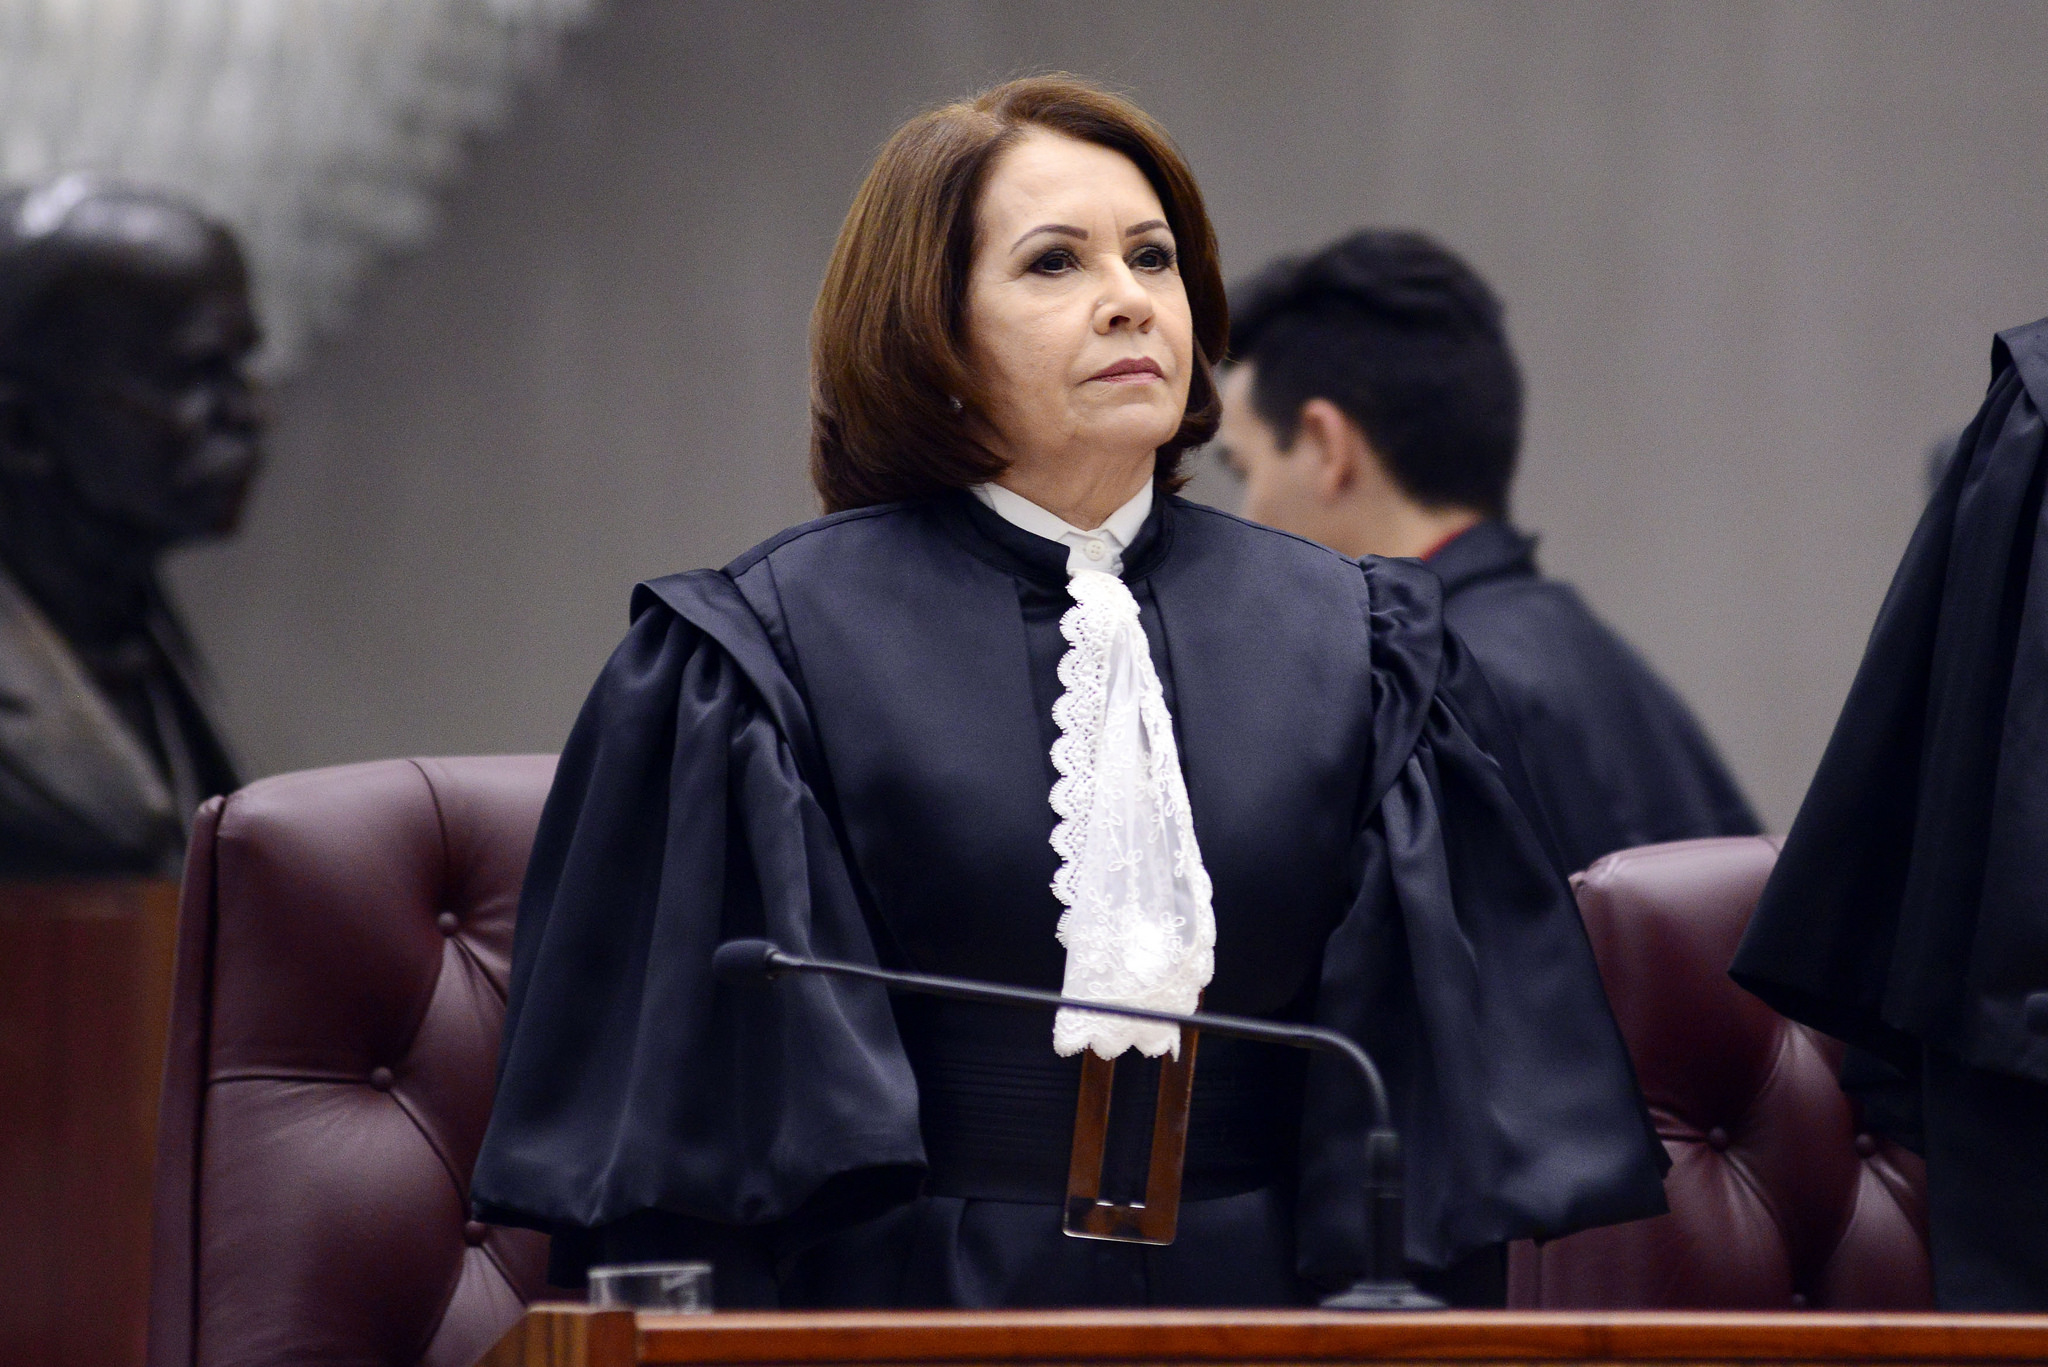 Ministra Laurita Vaz, presidente do Superior Tribunal de Justiça (STJ).